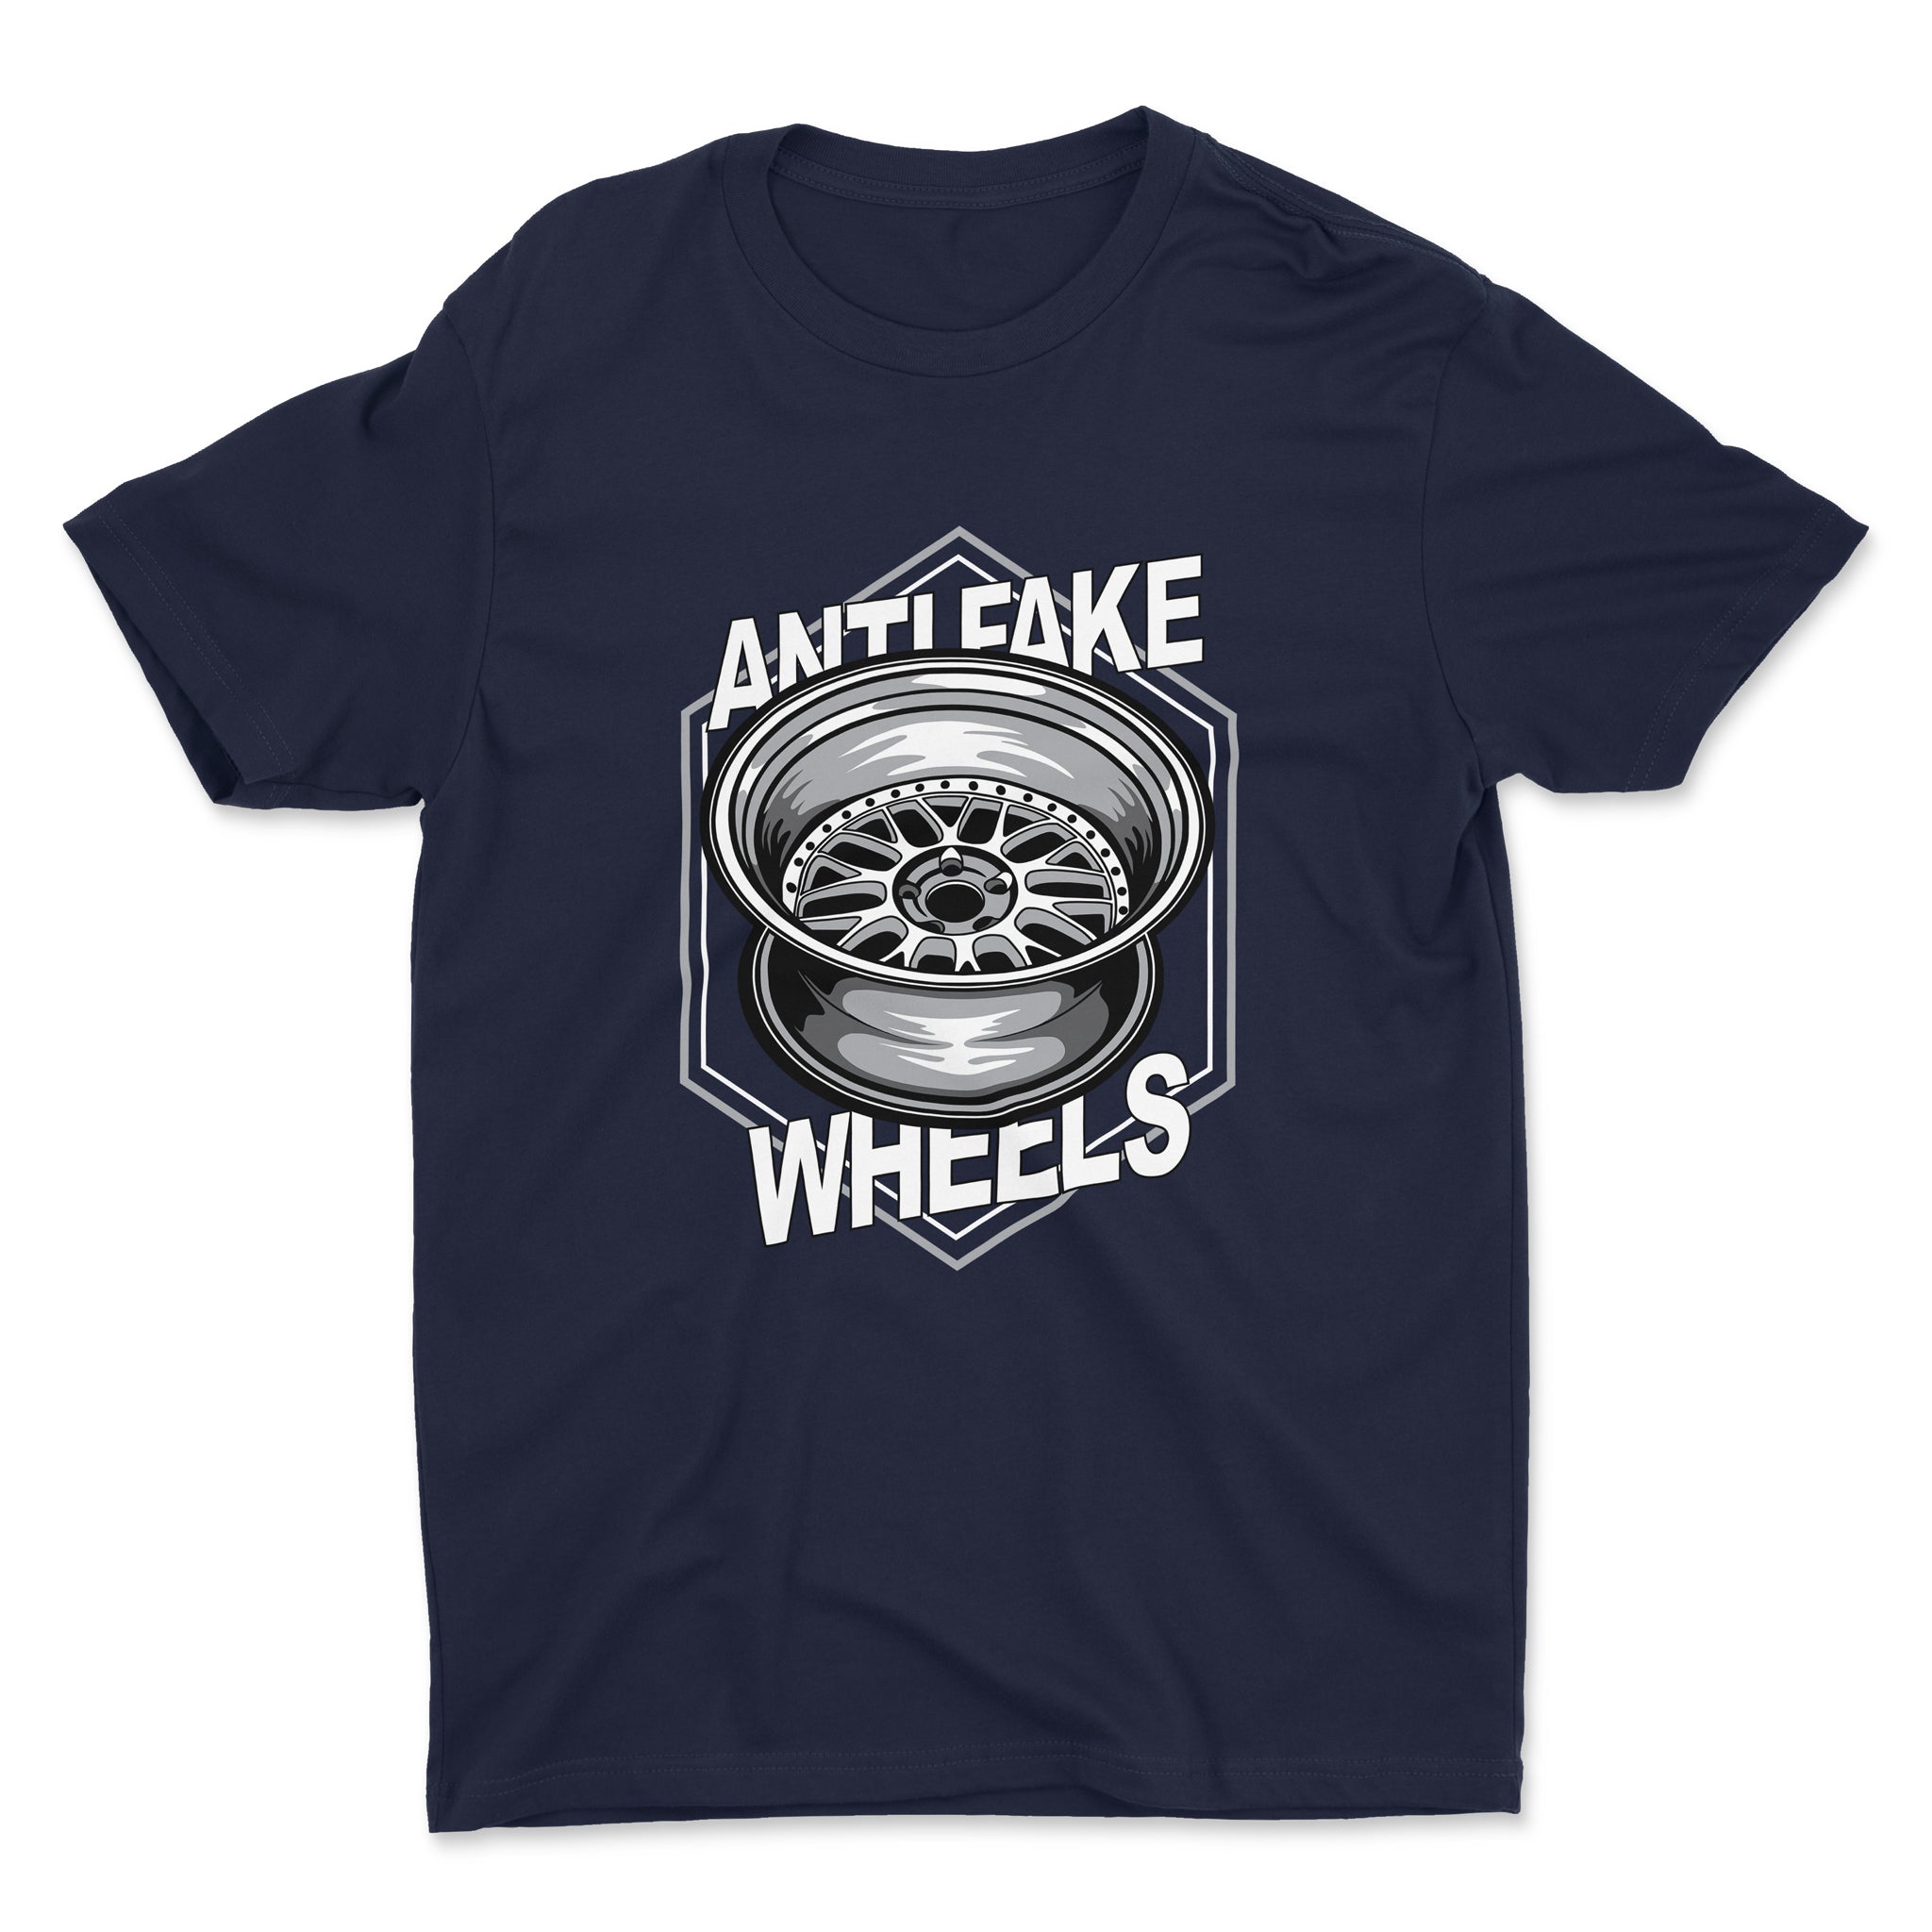 Anti Fake Wheels - VSXX - Car T-Shirt - Navy